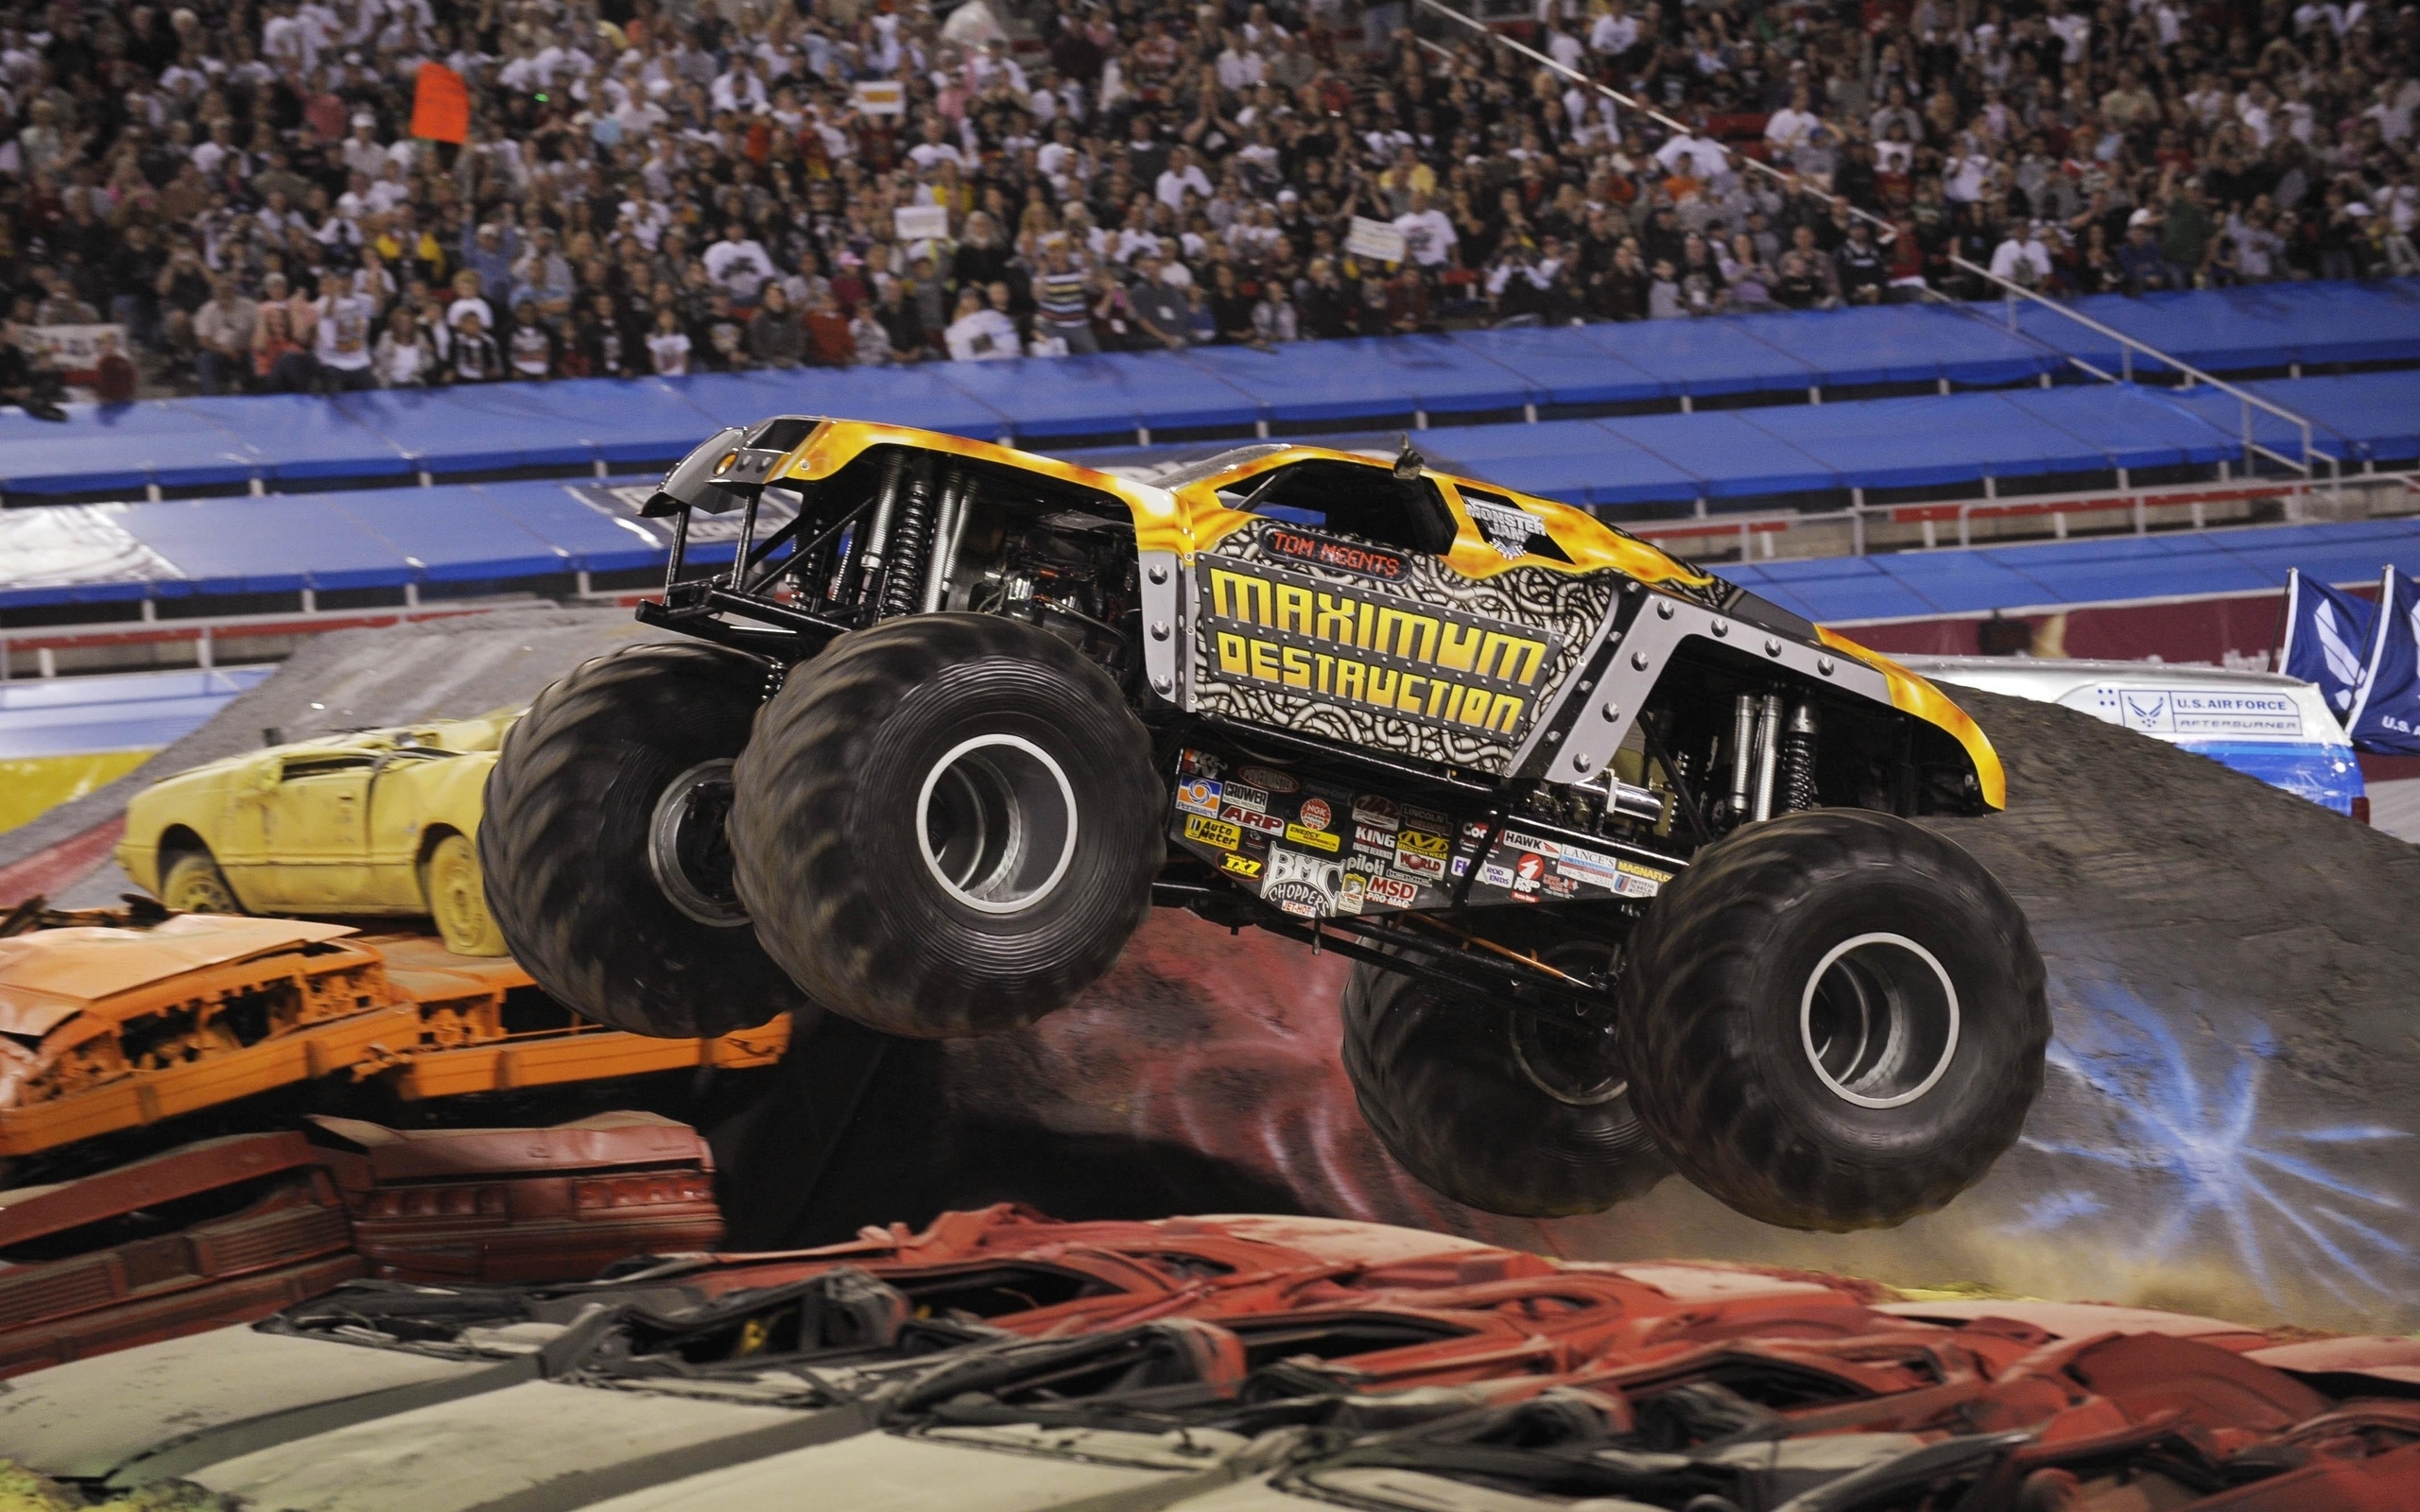 Monster Truck: A live motorsport event tour, Feld Entertainment, Maximum Destruction team. 2560x1600 HD Wallpaper.